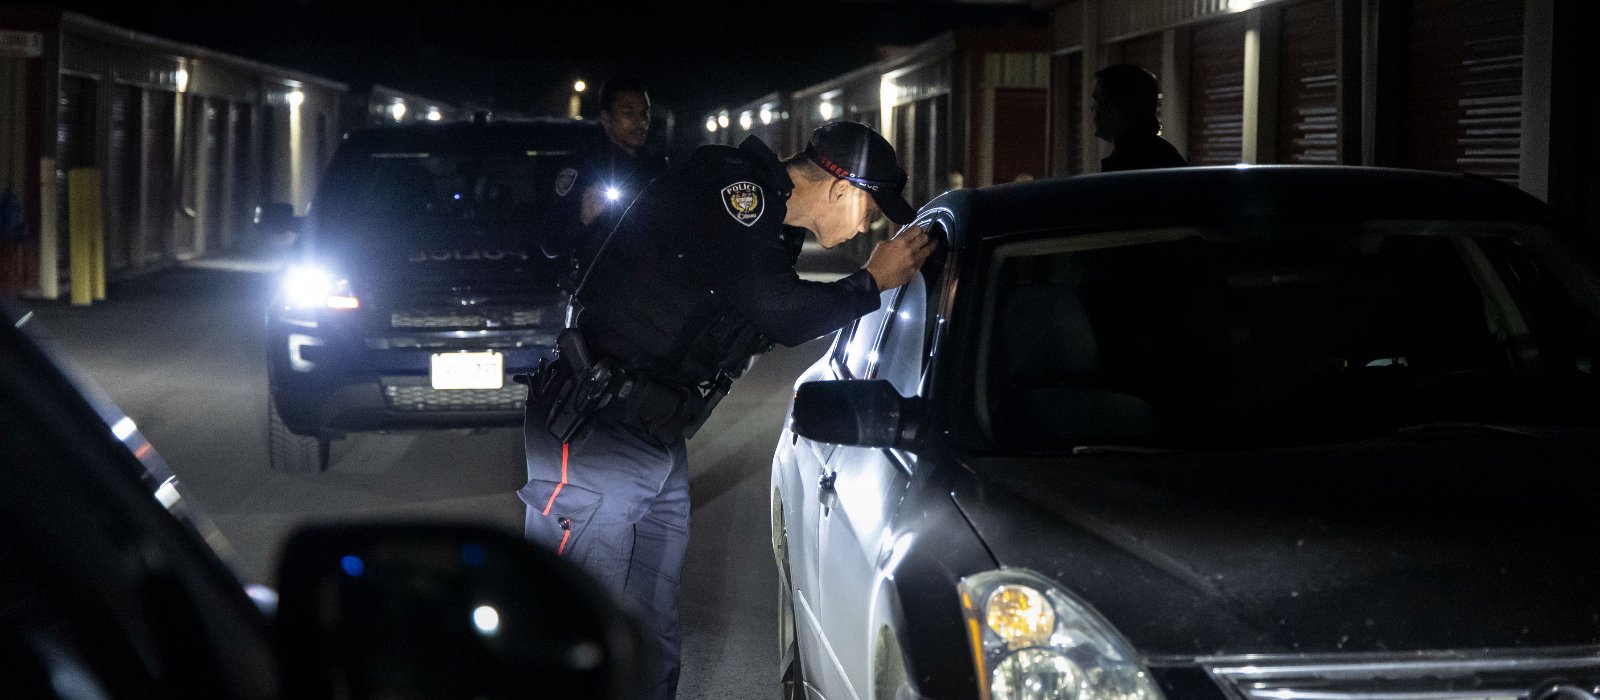 Des agents du Service de police d'Ottawa répondent à un appel concernant une effraction dans un commerce local.